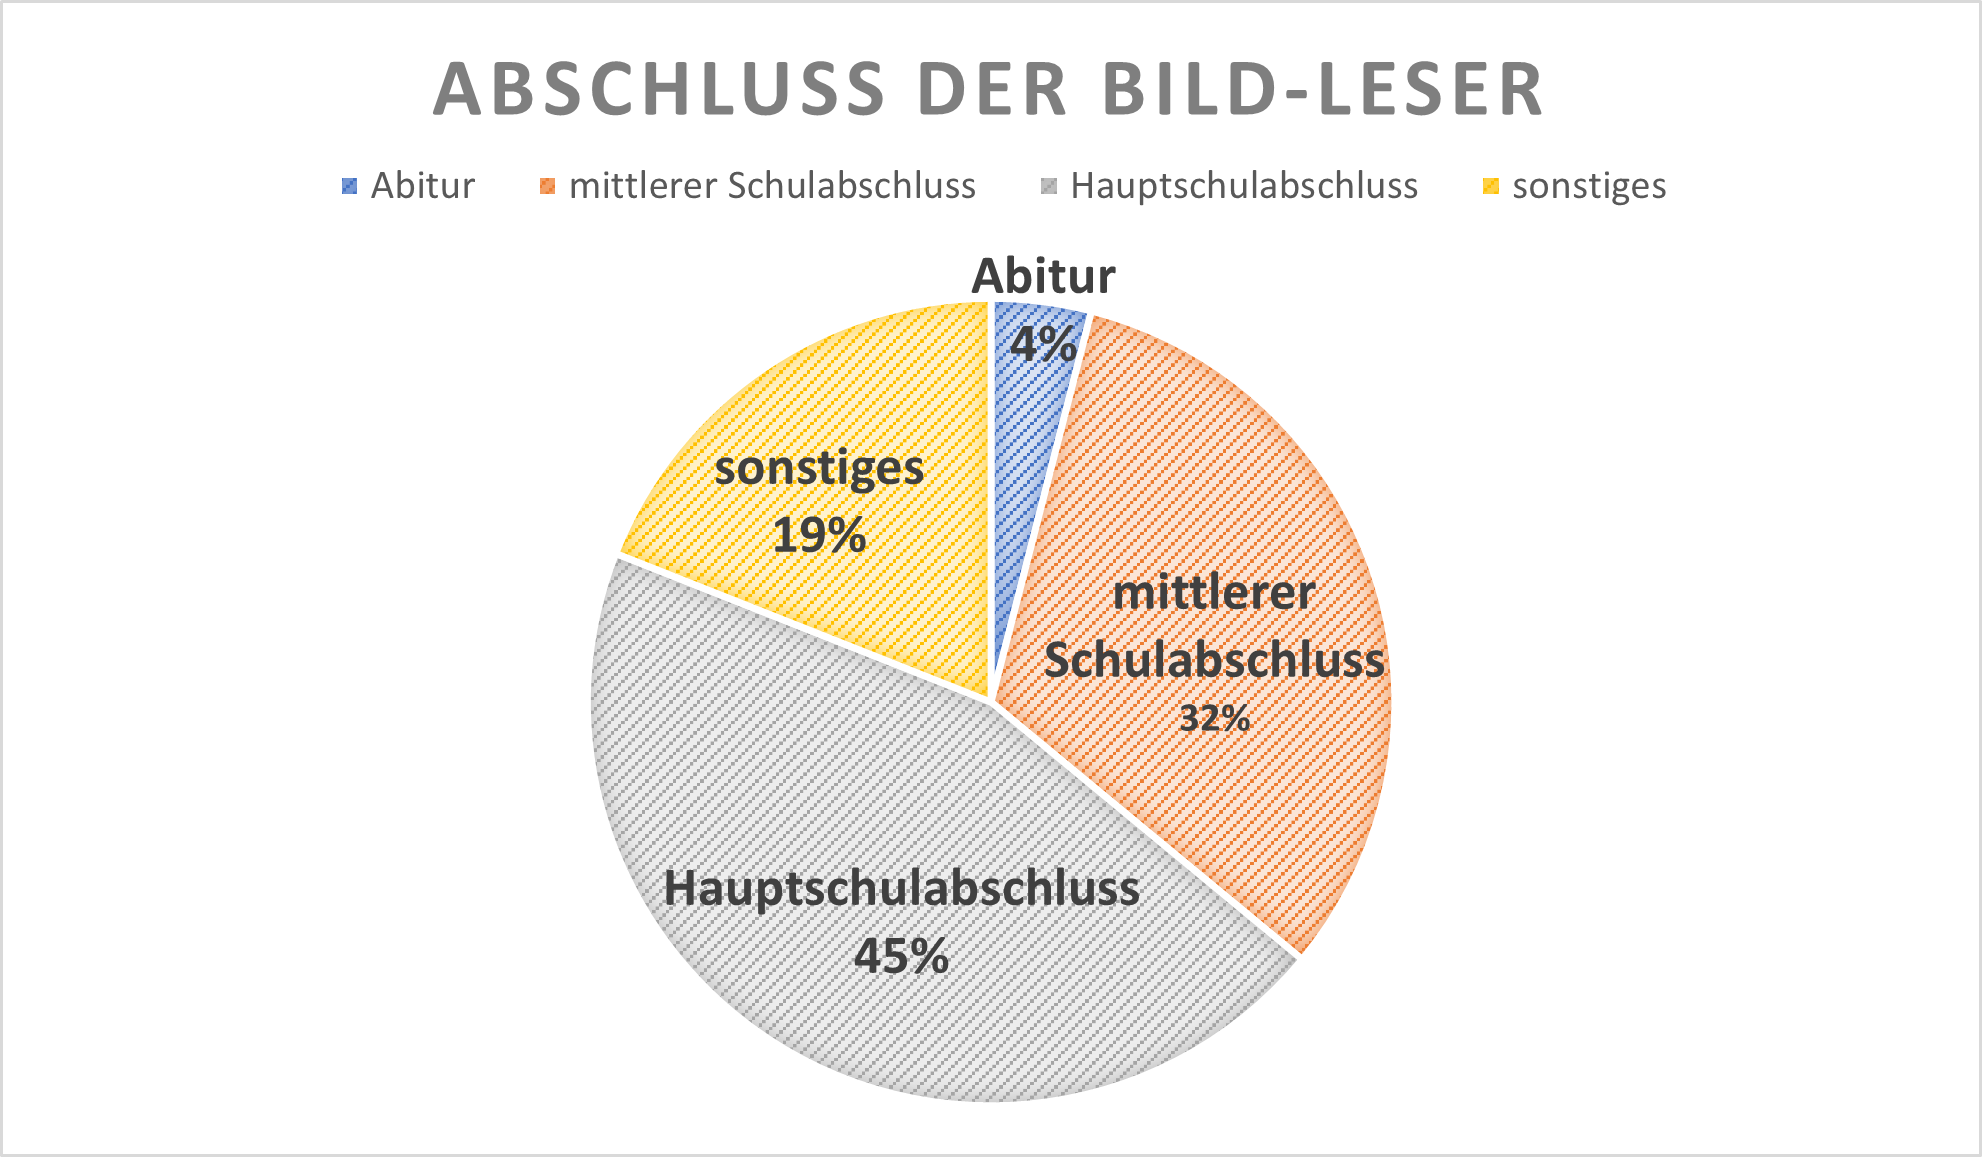 Leser der Bild-Zeitung nach Abschluss: Abitur = 4%, mittleren Schulabschluss = 32%, Hauptschulabschluss = 45%, Sonstiges = 19%